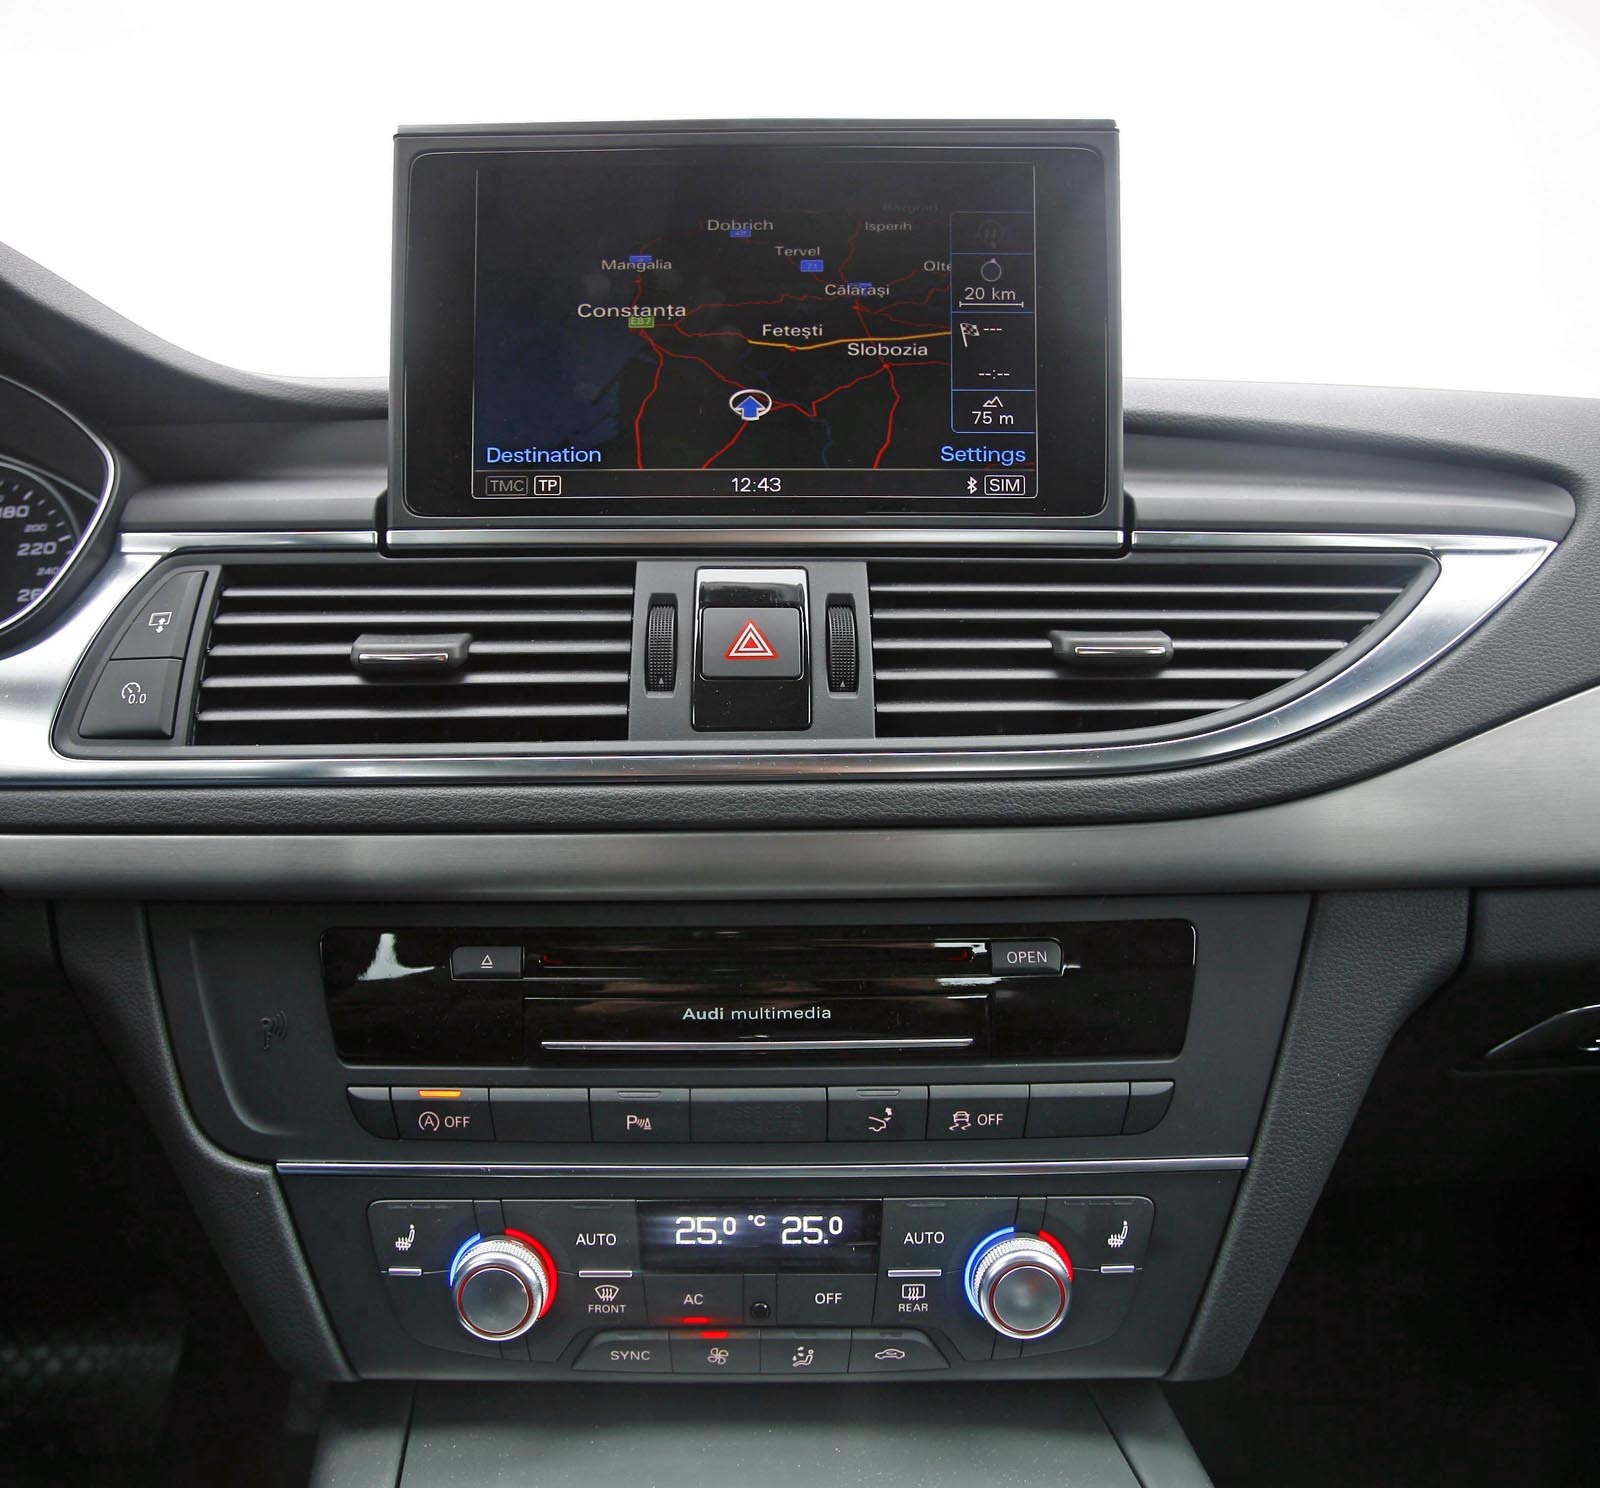 Displayul central escamotabil din Audi A7 este lizibil si cu indicatii foarte clare